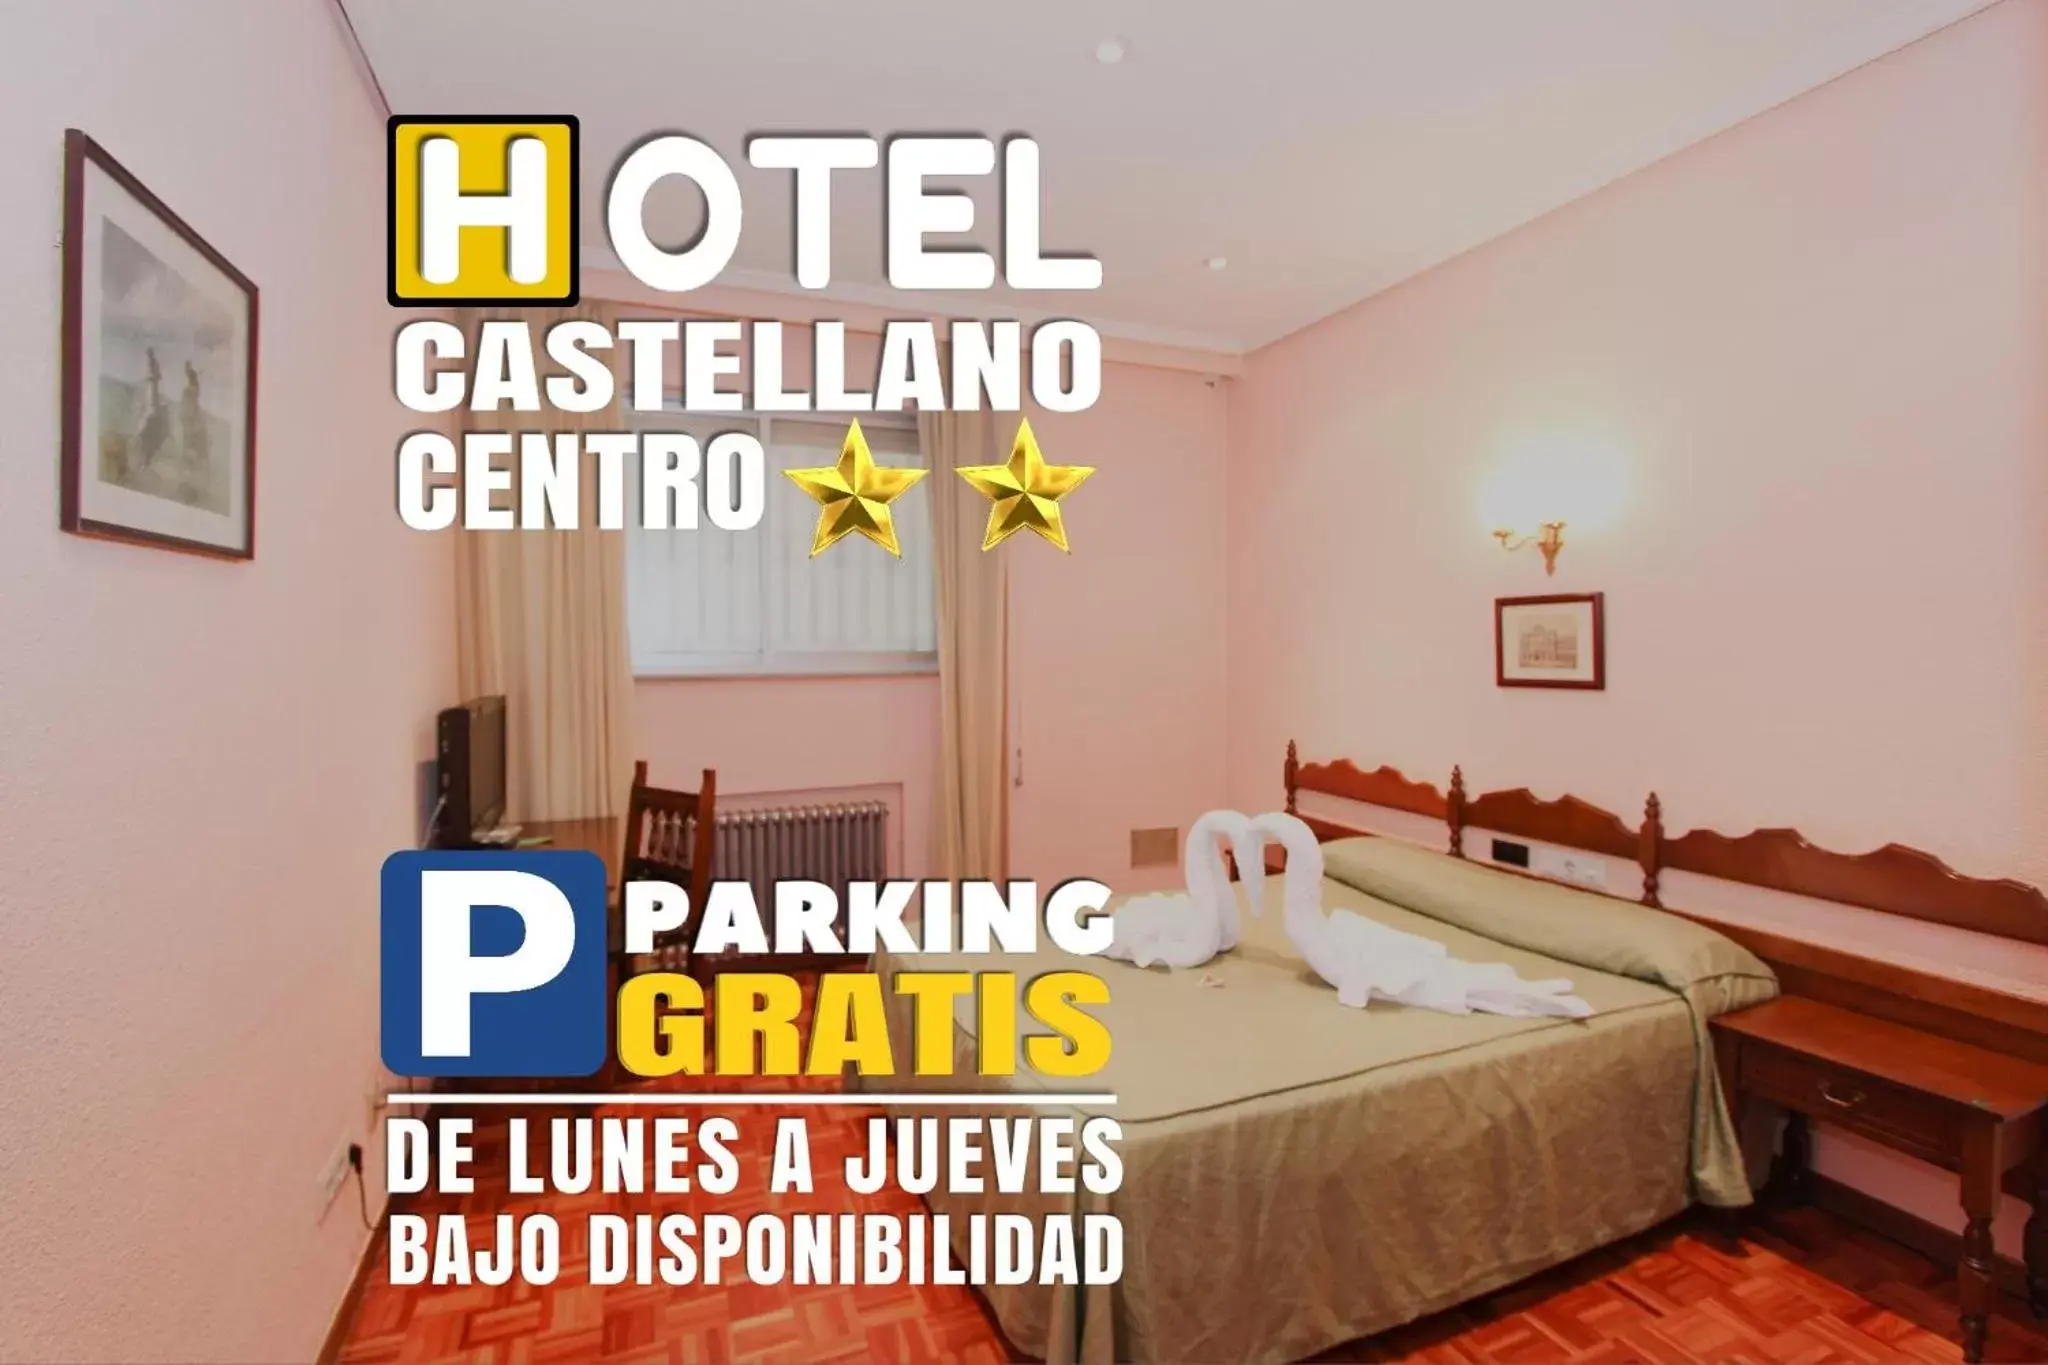 Certificate/Award in Hotel Castellano Centro